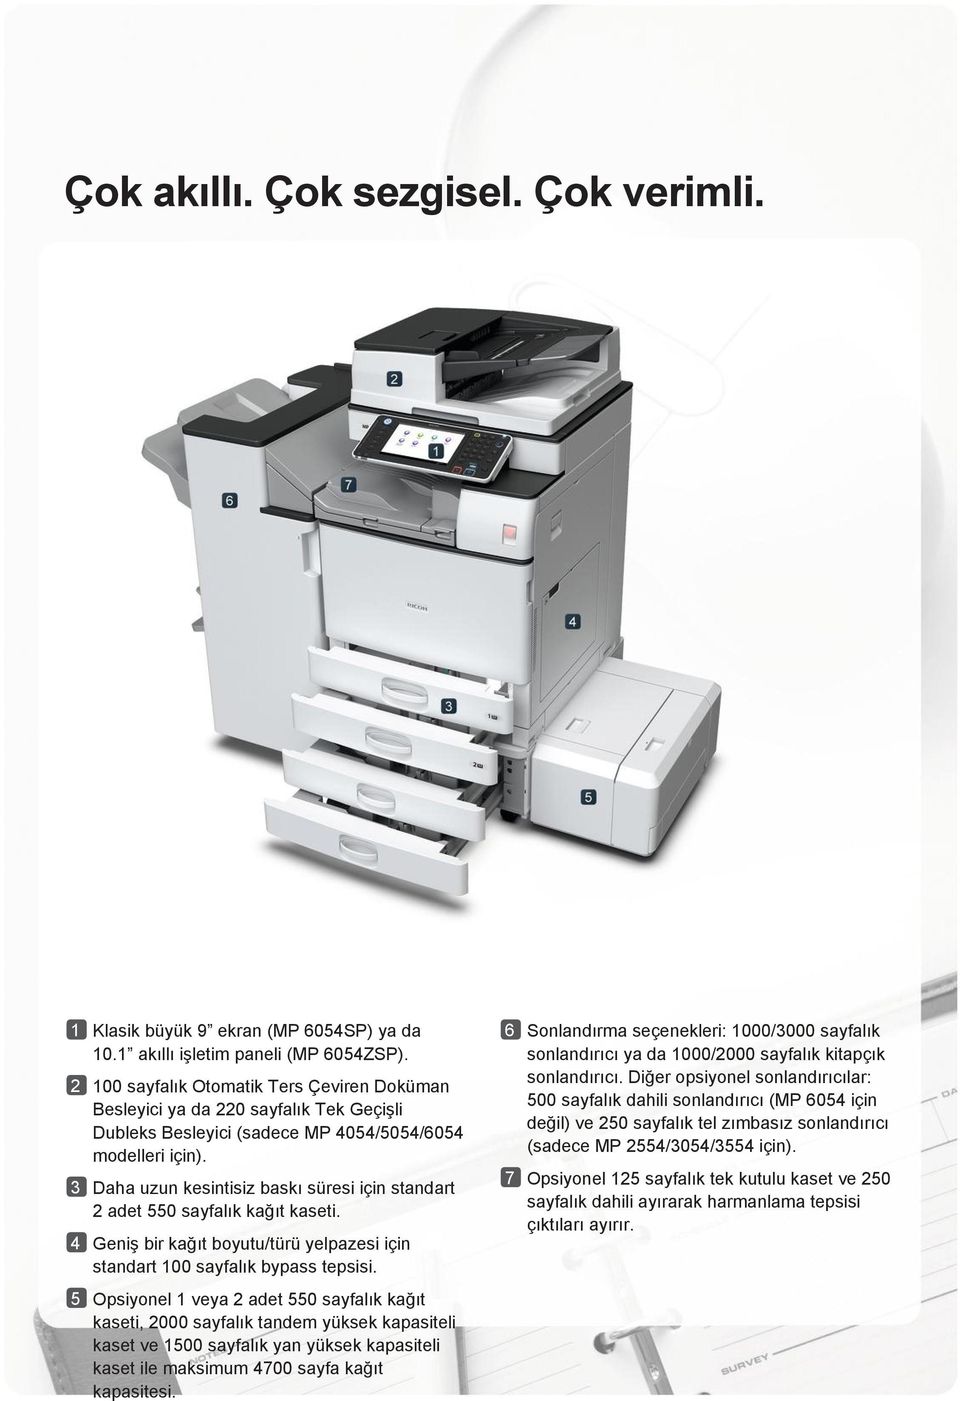 3 Daha uzun kesintisiz baskı süresi için standart 2 adet 550 sayfalık kağıt kaseti. 4 Geniş bir kağıt boyutu/türü yelpazesi için standart 100 sayfalık bypass tepsisi.